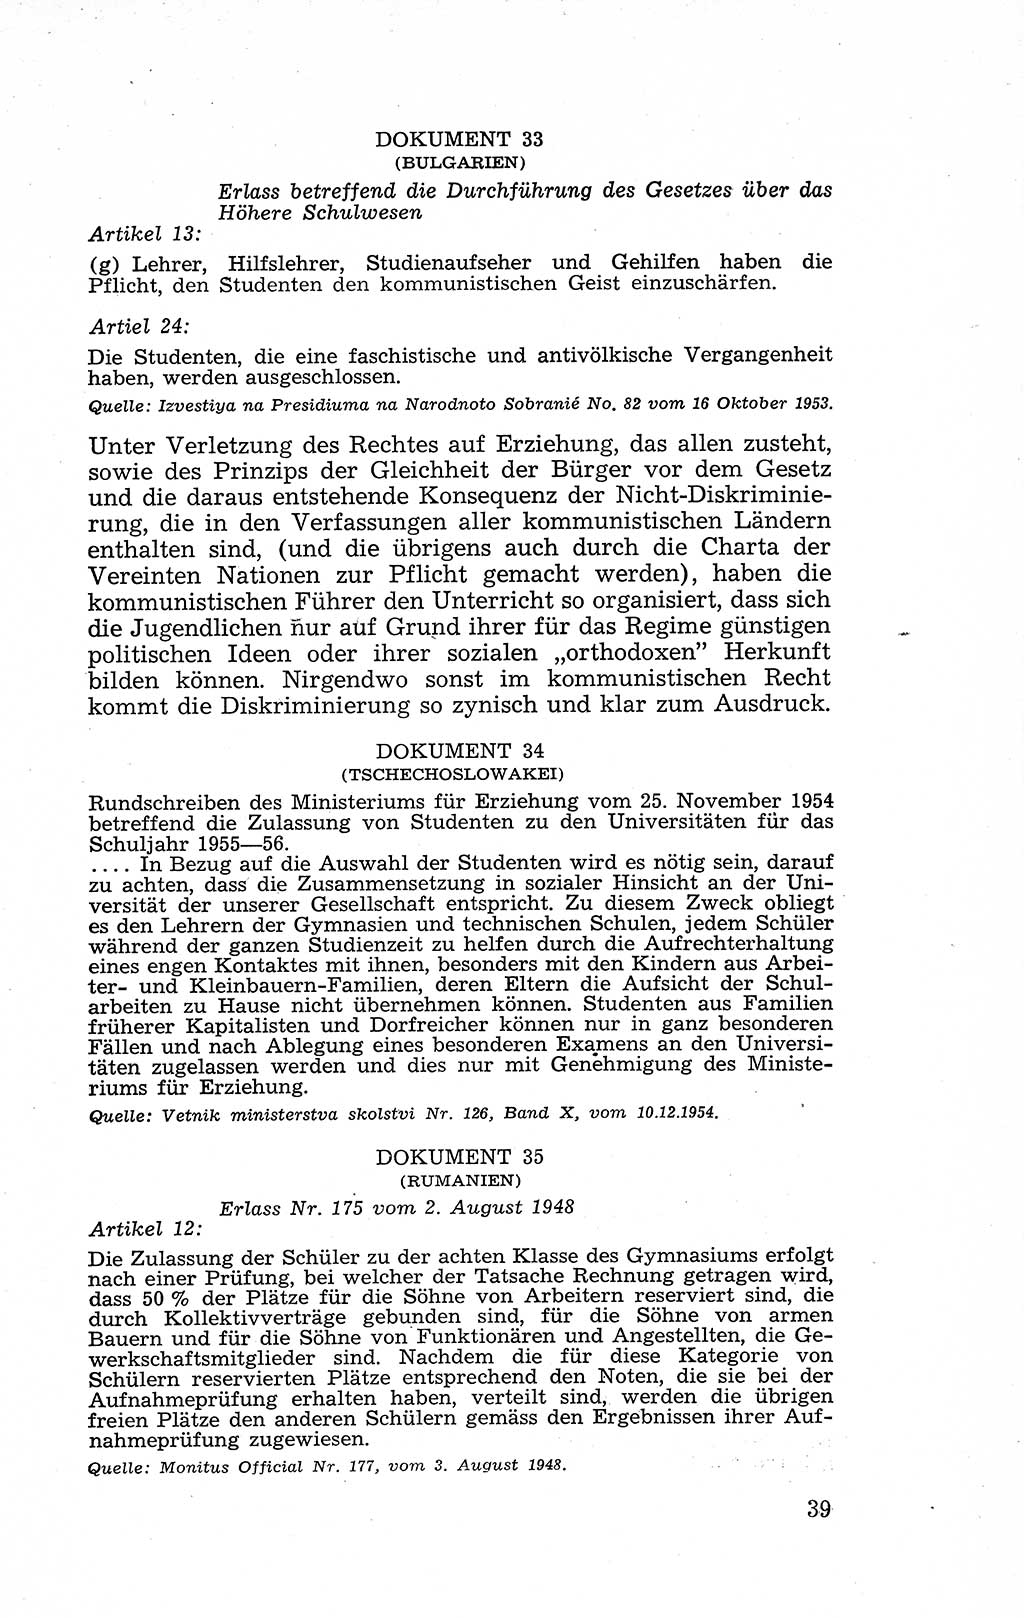 Recht in Fesseln, Dokumente, Internationale Juristen-Kommission [Bundesrepublik Deutschland (BRD)] 1955, Seite 39 (R. Dok. IJK BRD 1955, S. 39)